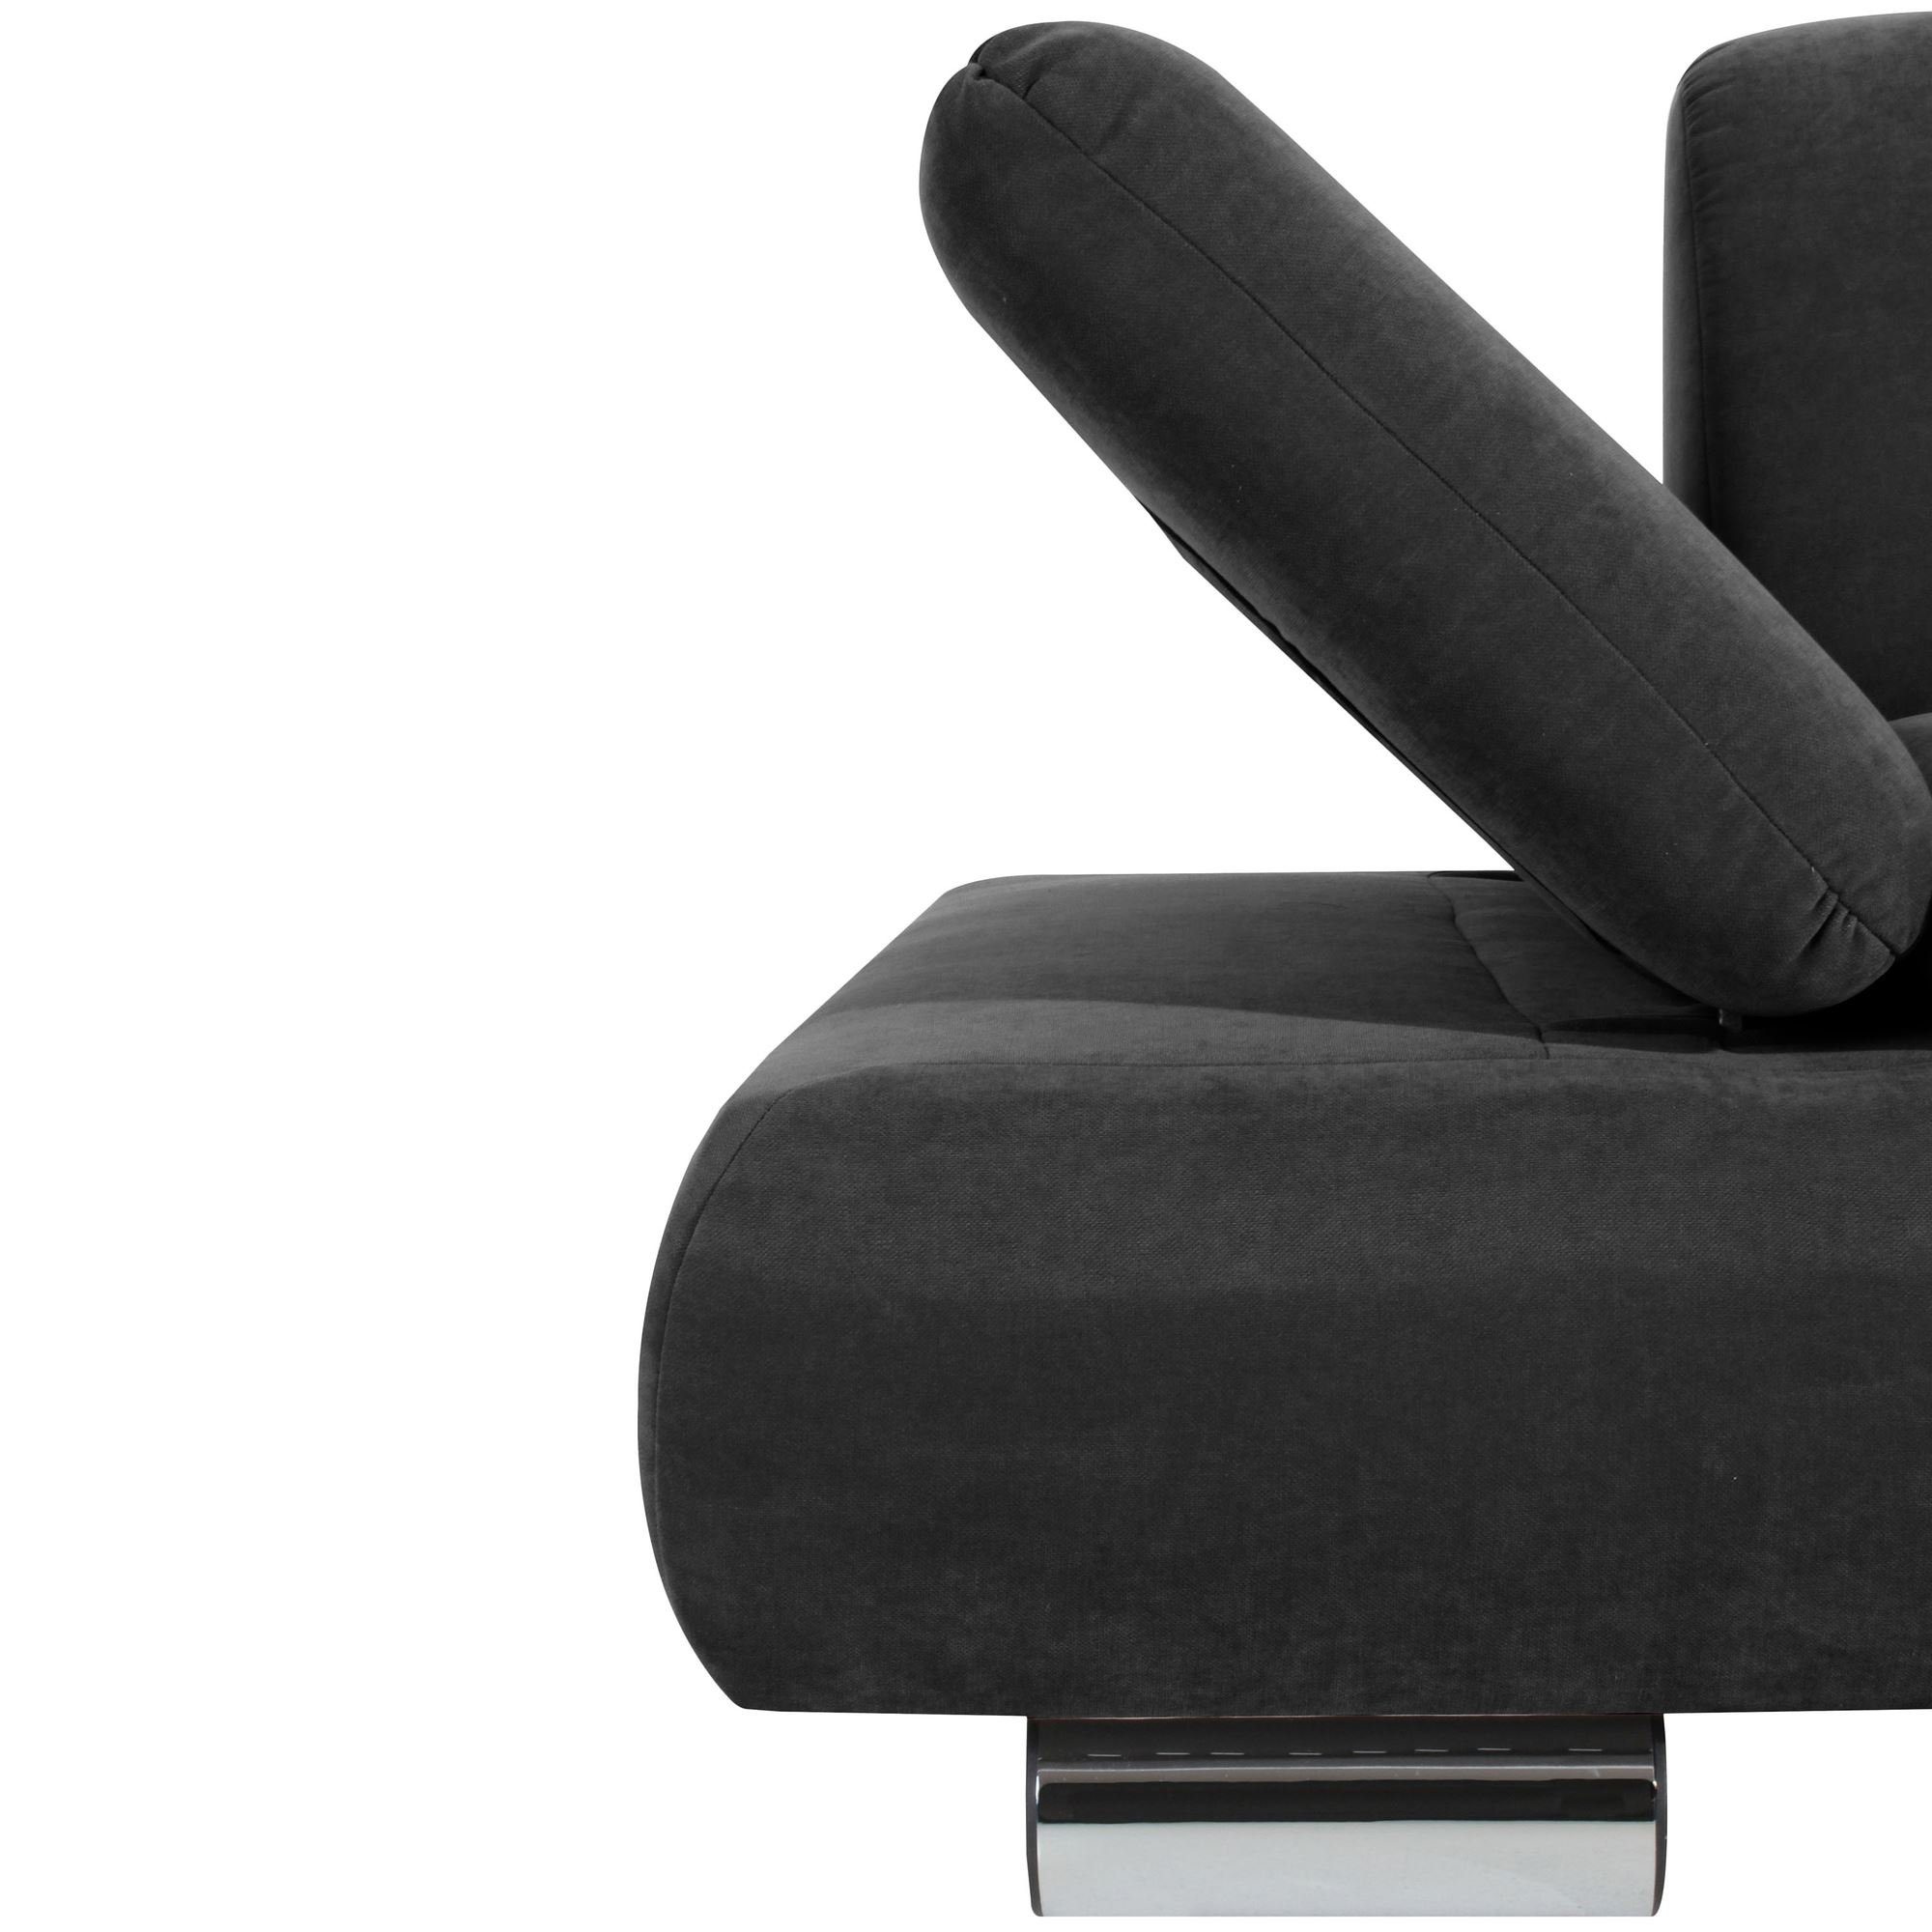 Versand Sofa 1 Sitz inkl. 2-Sitzer Kaye Sofa Kostenlosem Bezug Kessel Metallfuß, aufm 58 Funktionsarmteile,hochwertig Teile, Veloursstoff verstellbare Sparpreis verarbeitet,bequemer